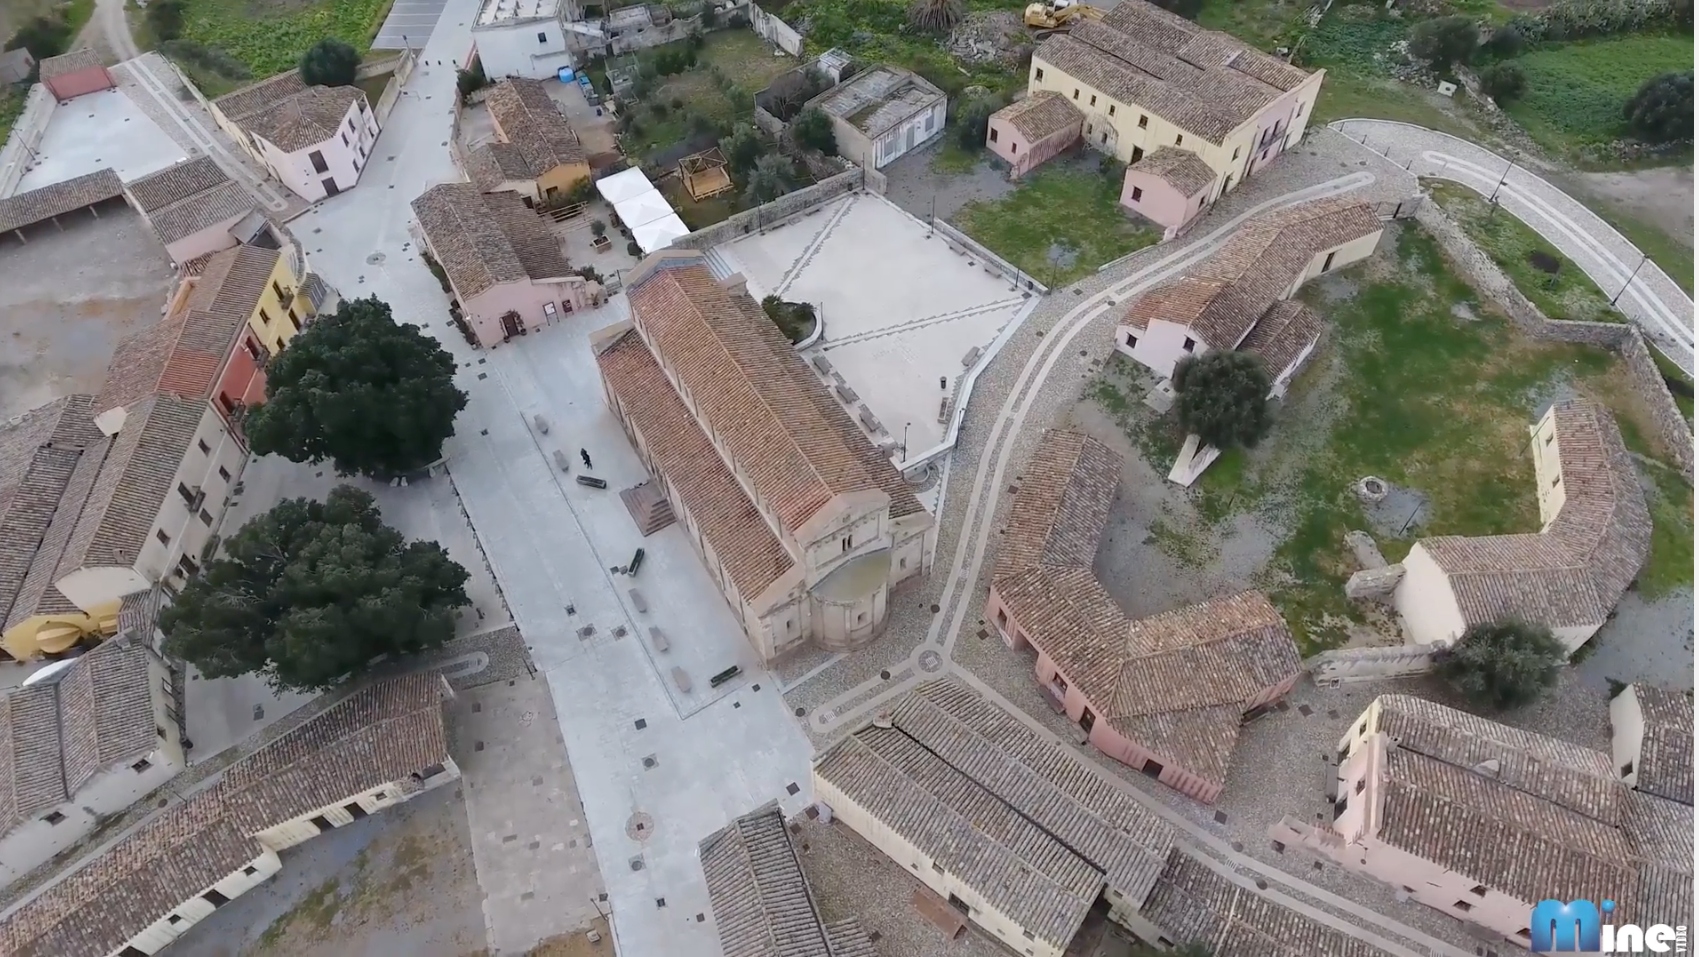 L'antico borgo medievale di Tratalias visto dall'alto con le fantastiche immagini in 4k